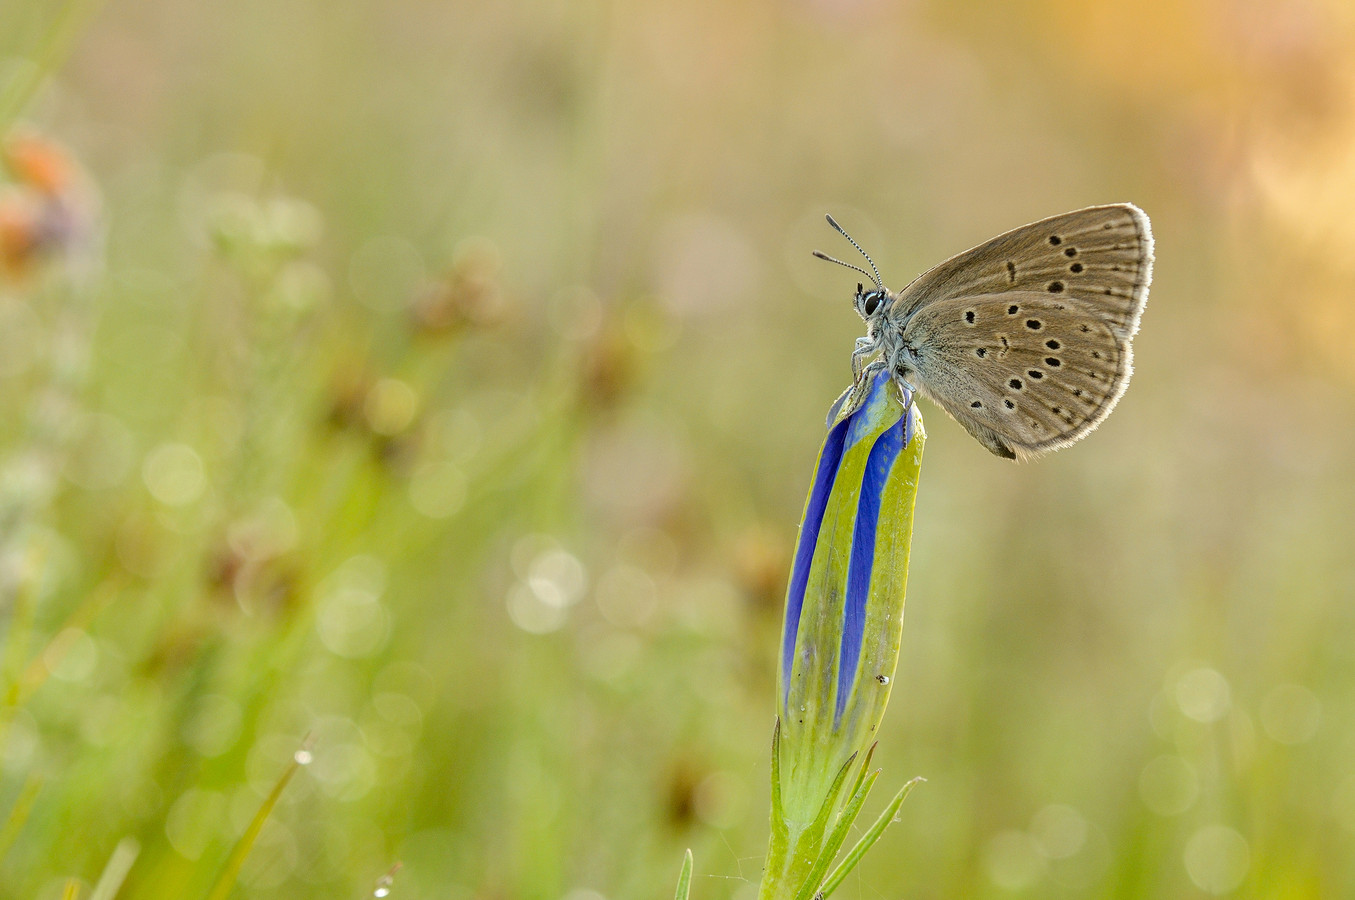 Het Gentiaanblauwtje legt haar eitjes alleen op de bloemknoppen van de klokjesgentiaan. Door een toename van stikstof in de natuur dreigen zowel de vlinder als het plantje te verdwijnen.